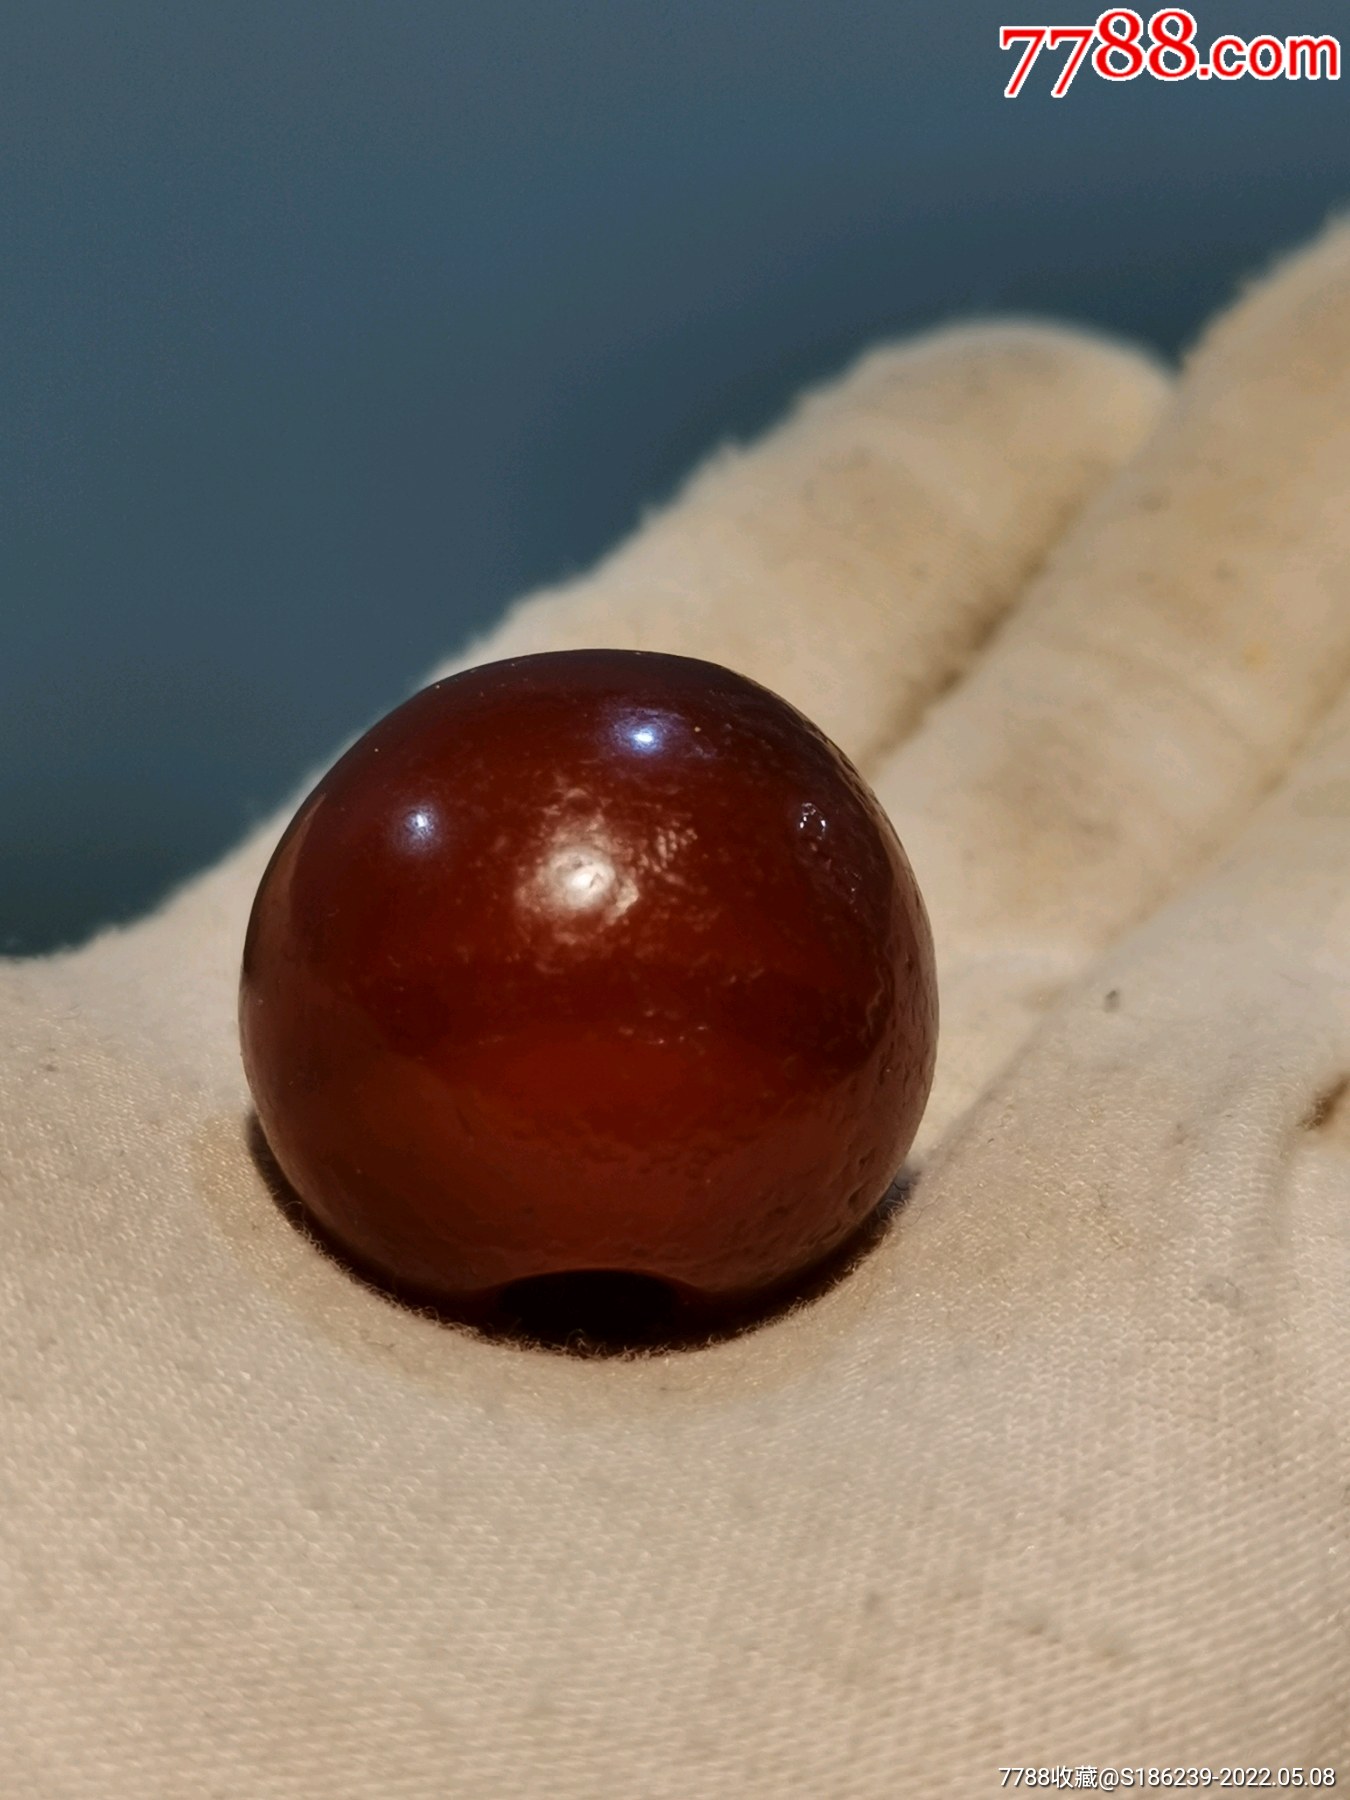 藏地收获一枚红玛瑙珠子皮壳沧桑直径约28厘米